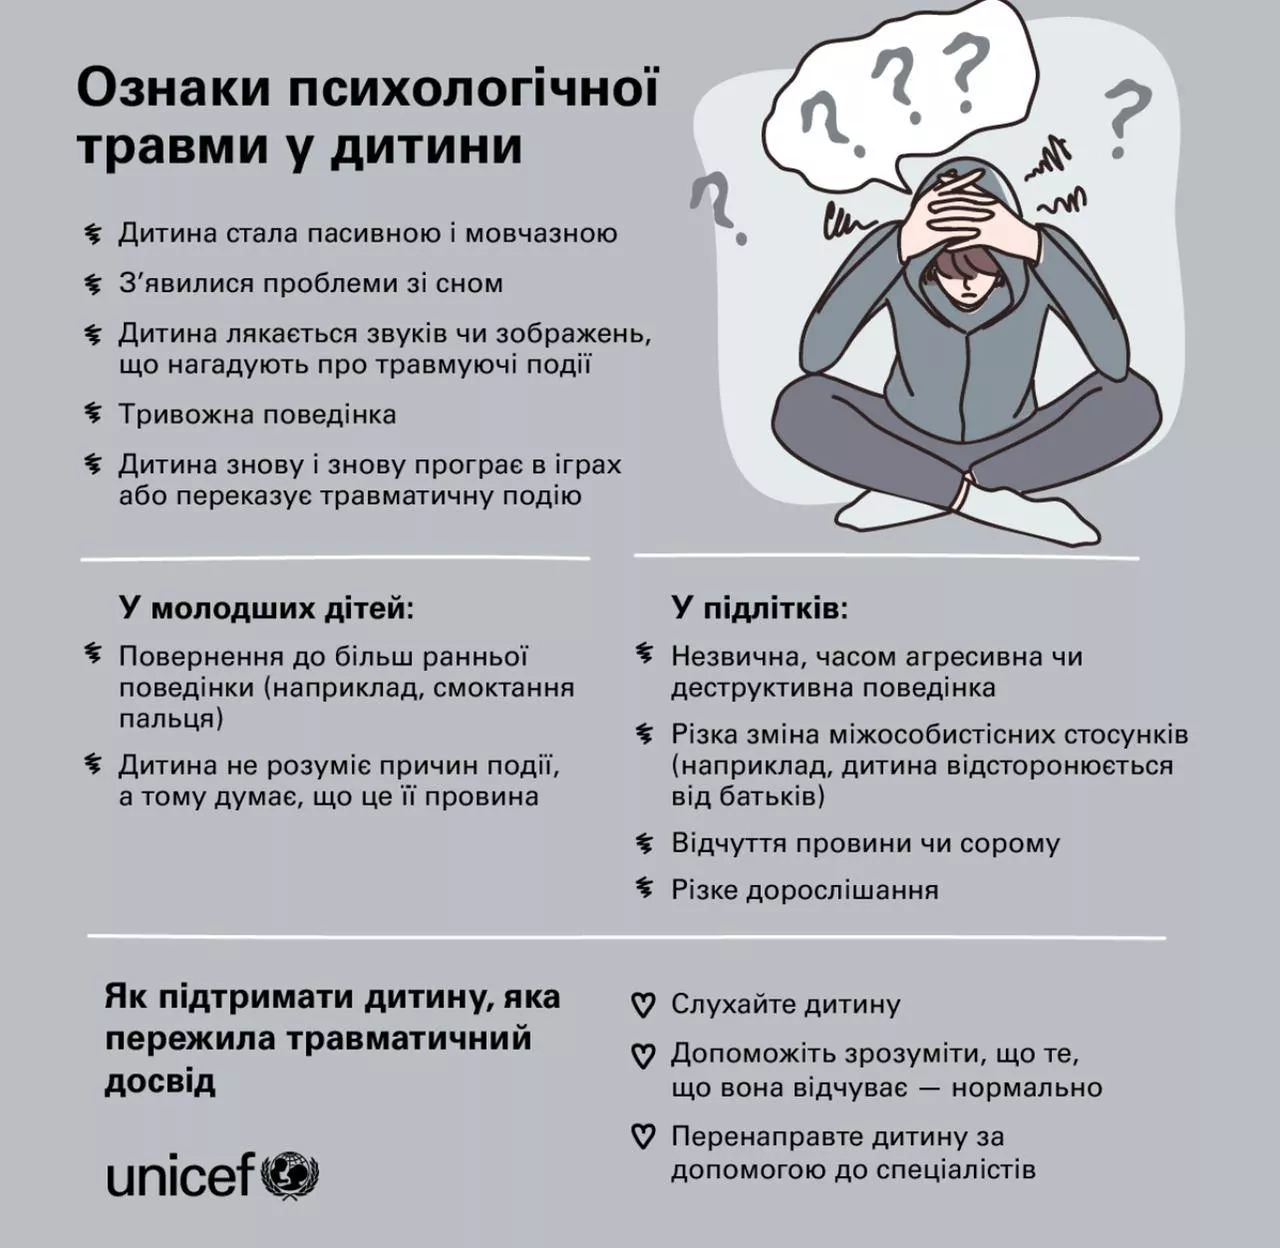 UNICEF випустили інфографіку про психологічні травми у дітей та підлітків